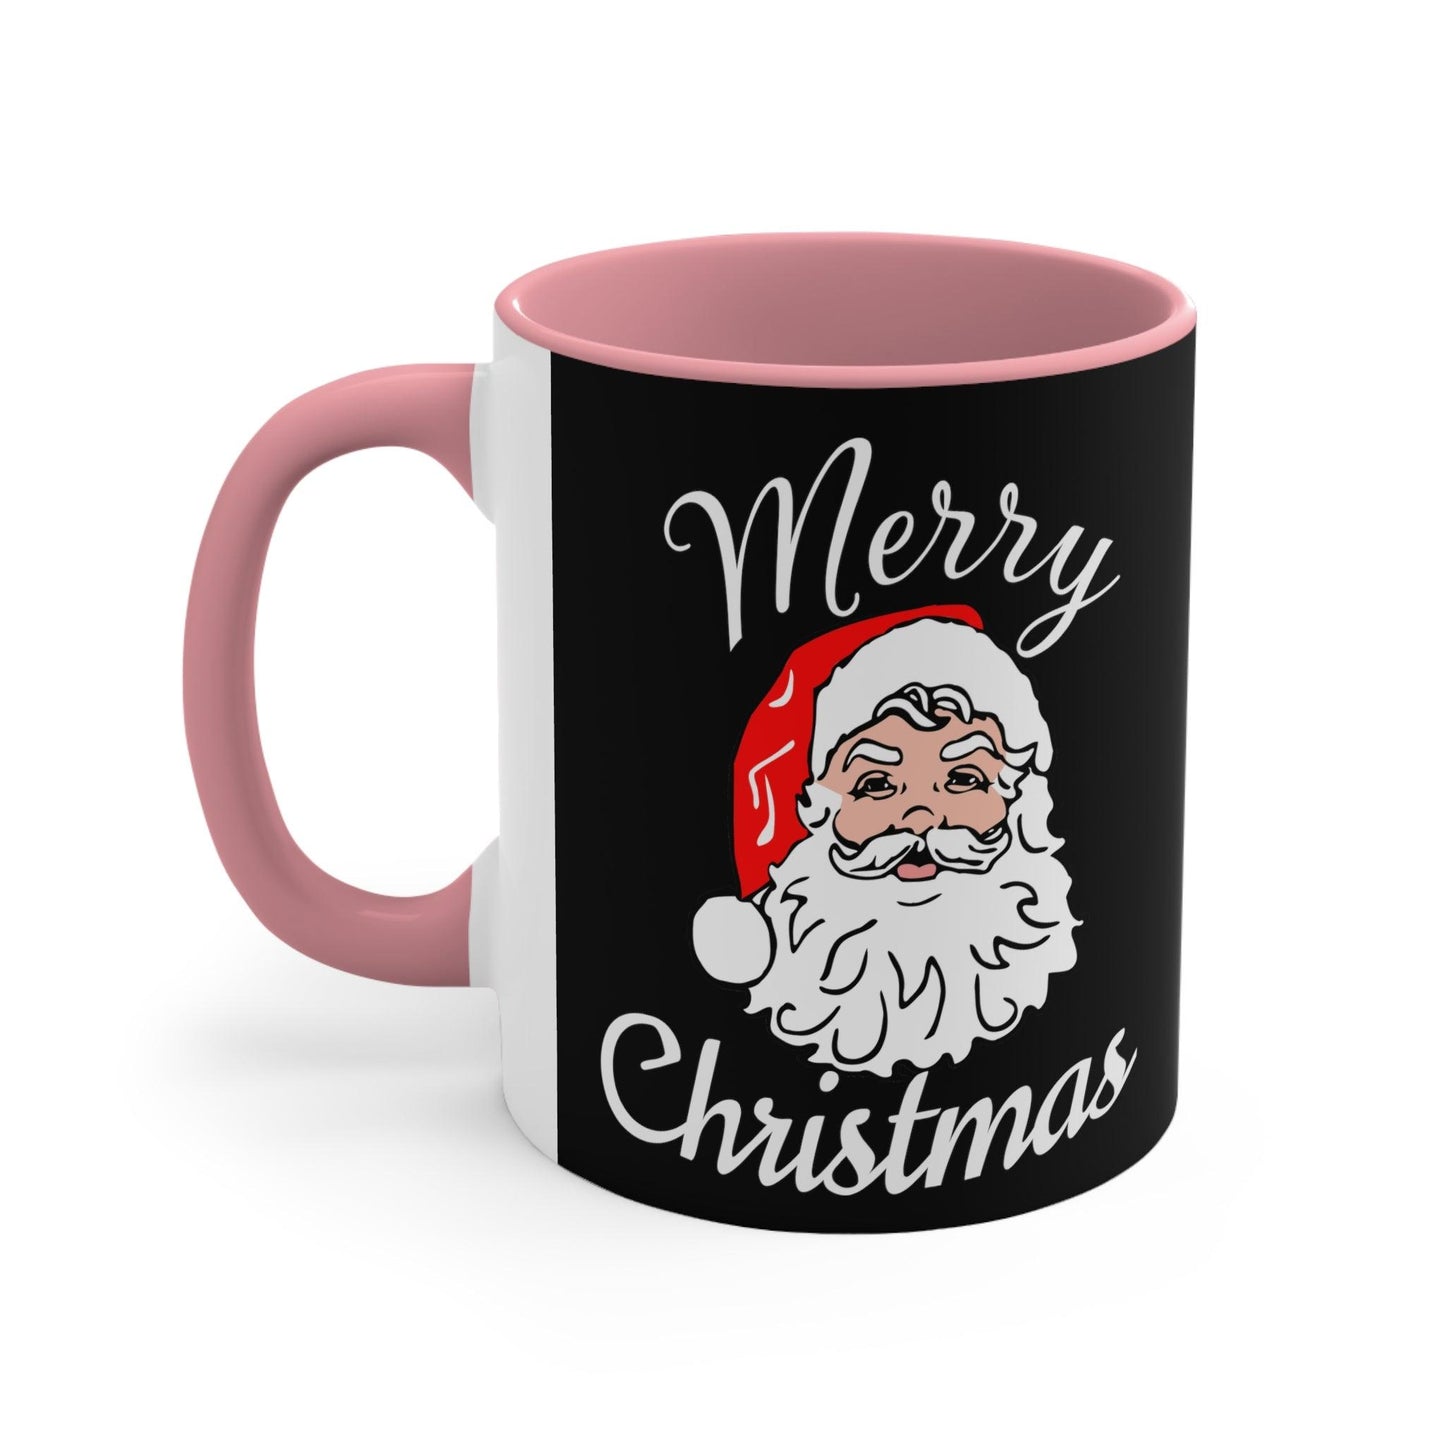 Santa, Merry Christmas Coffee Mug, Christmas Coffee mug Hot Cocoa Mug 11oz Christmas Gift for Coffee lovers